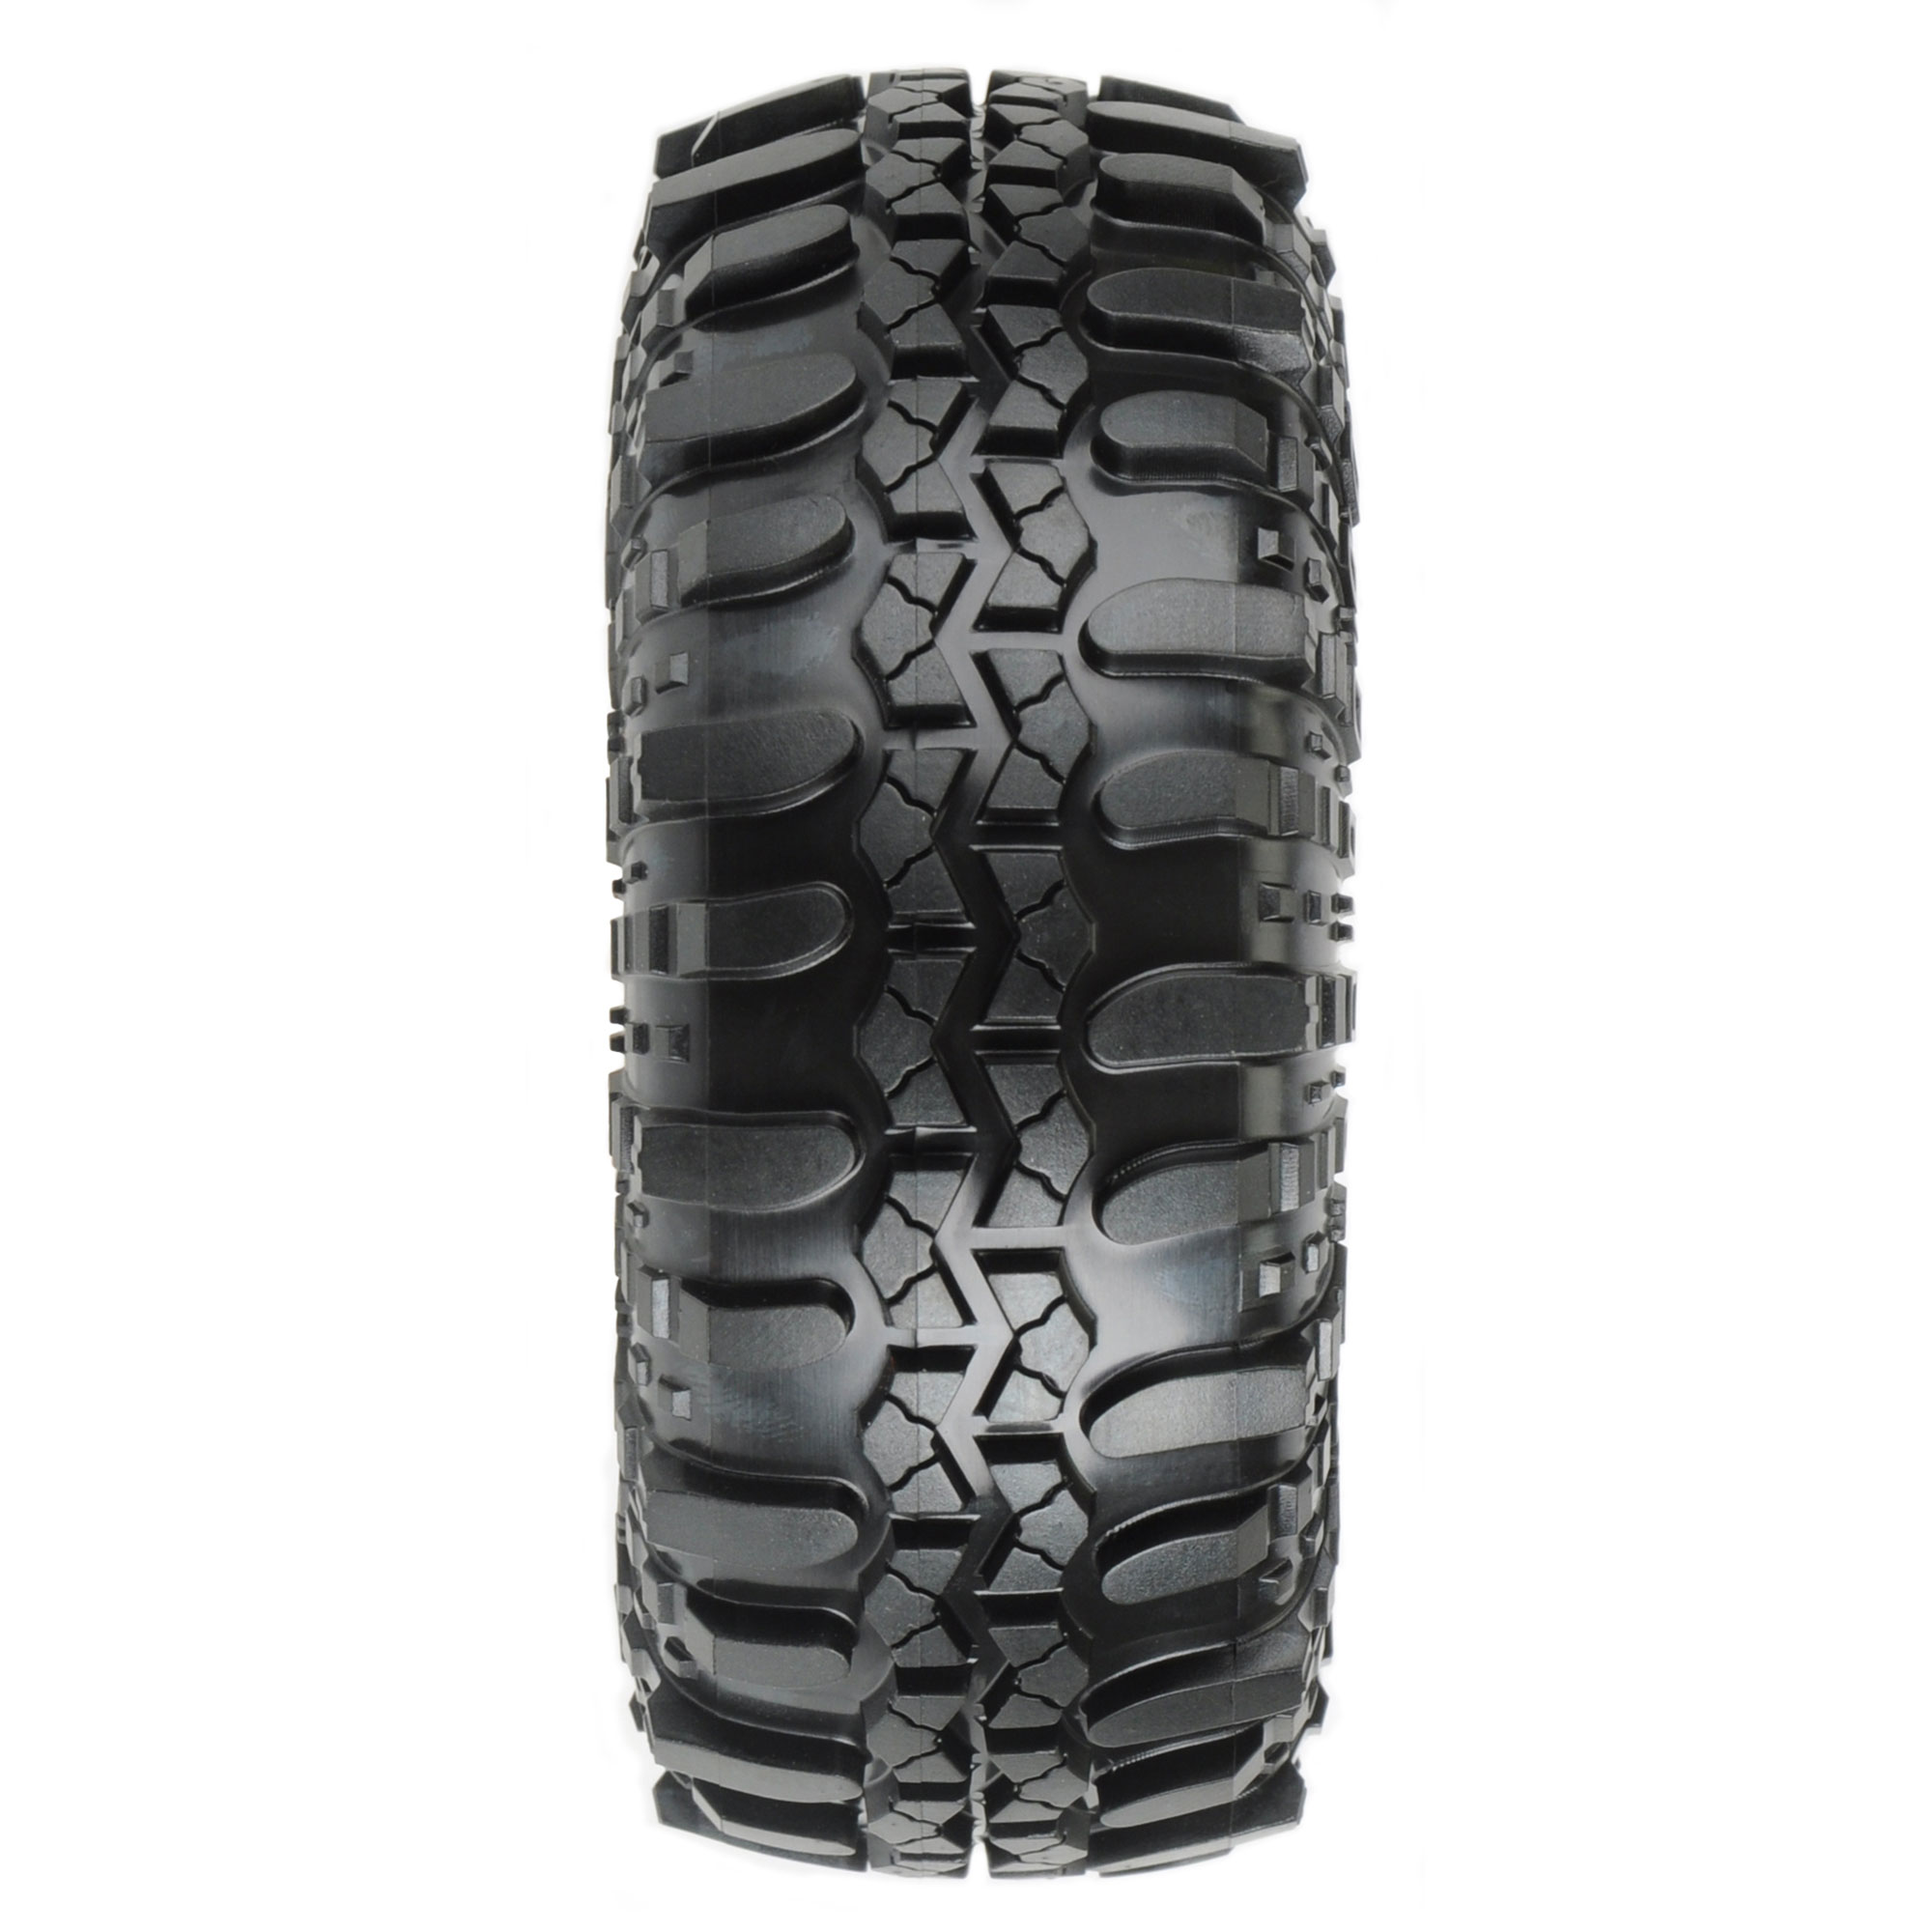 1/10 Interco Super Swamper XL G8 F/R 1.9" Rock Crawling Tires (2)